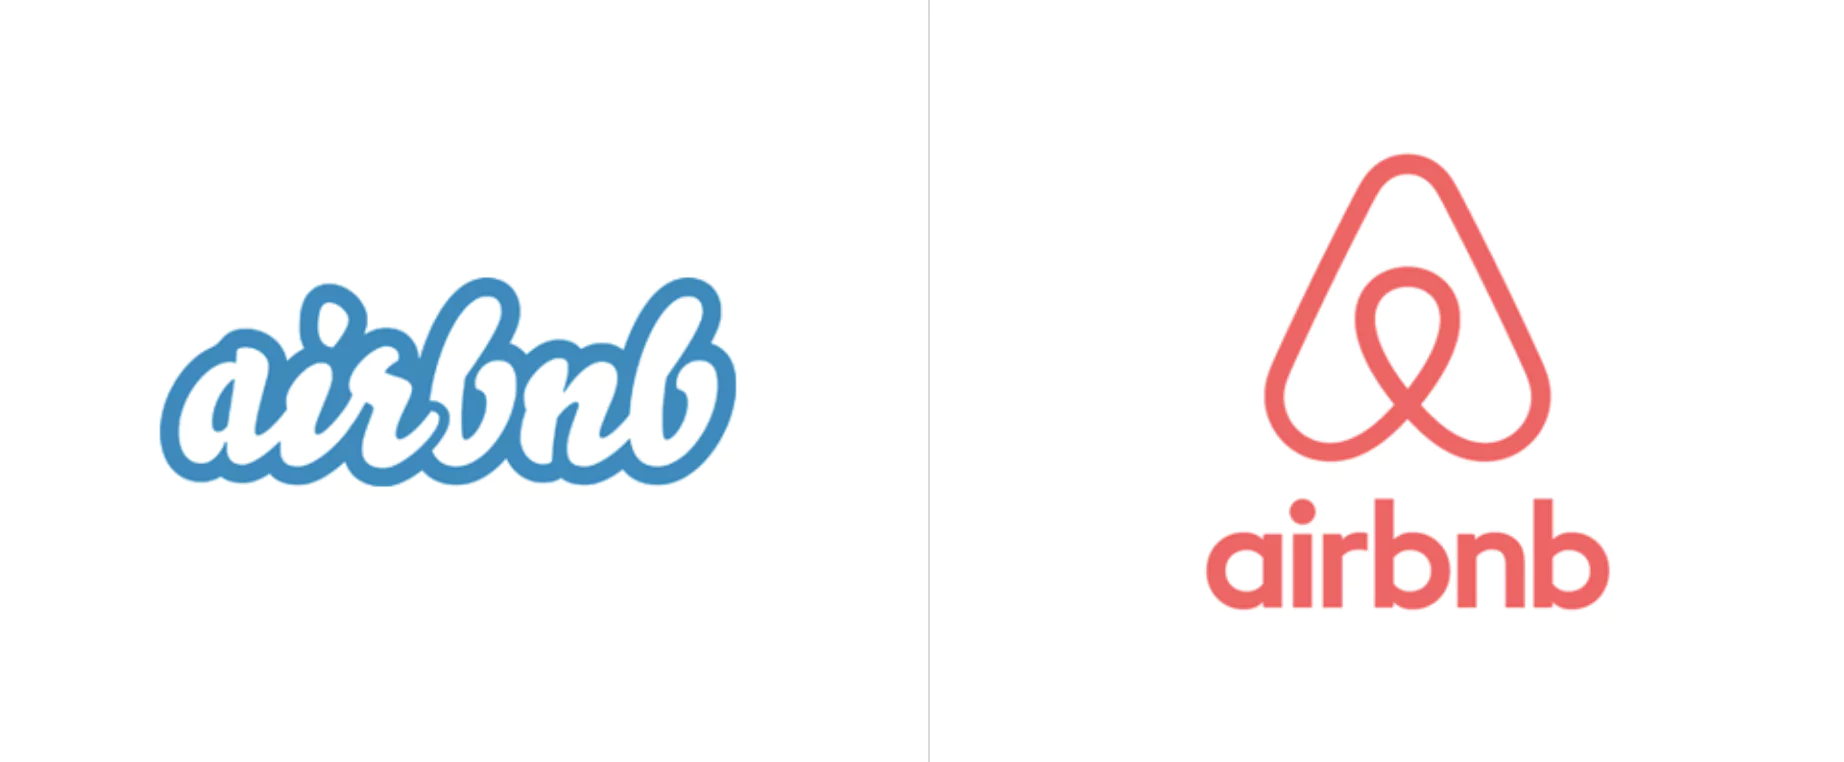 Jämförelse av Airbnb-logotyp: gammal vit/blå logotyp till vänster, ny rosa/röd logotyp till höger med en hjärt-hussymbol